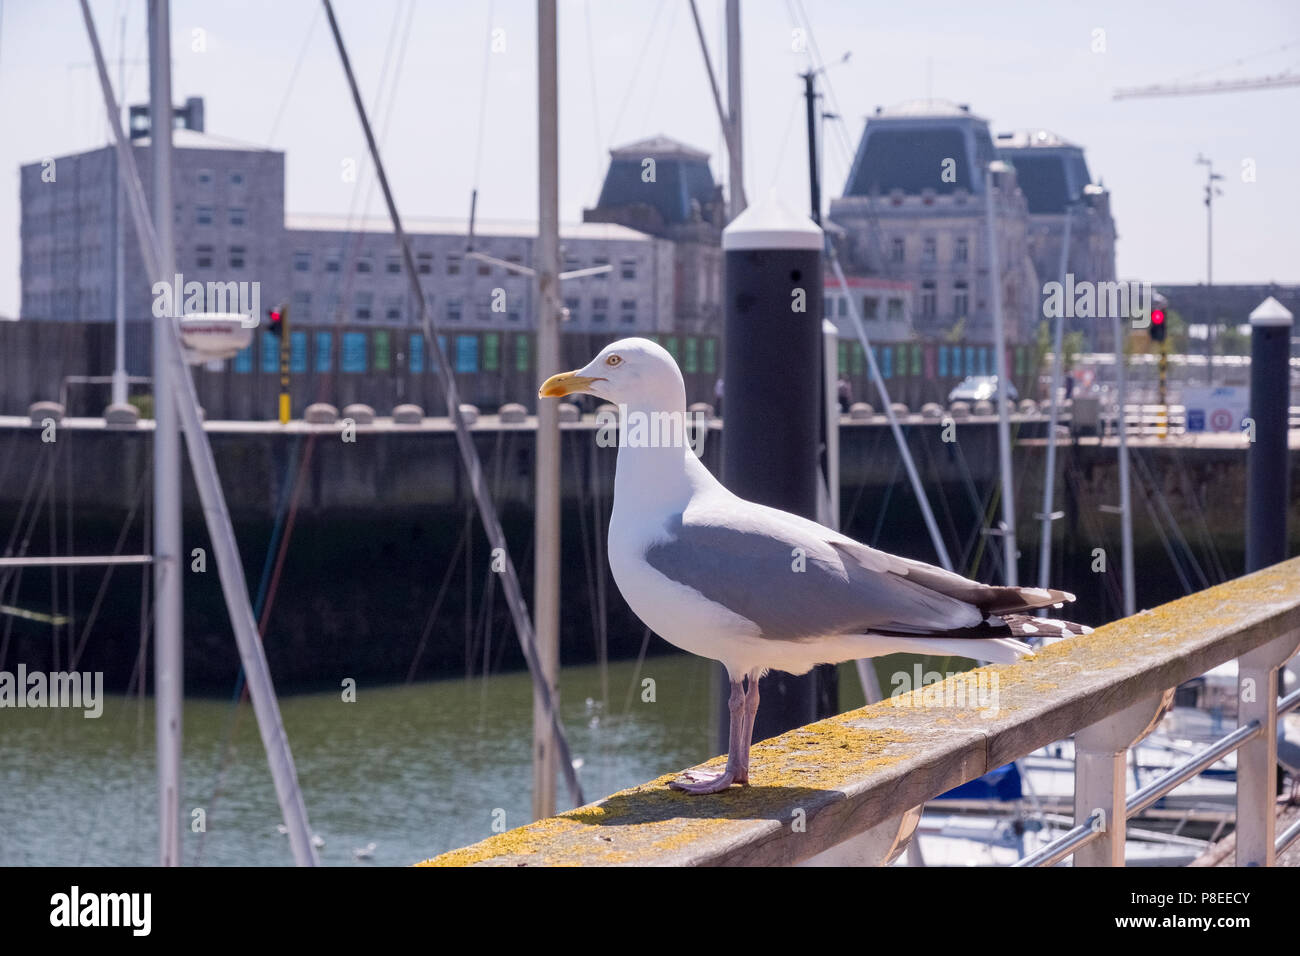 Marina with a gull bird. Stock Photo